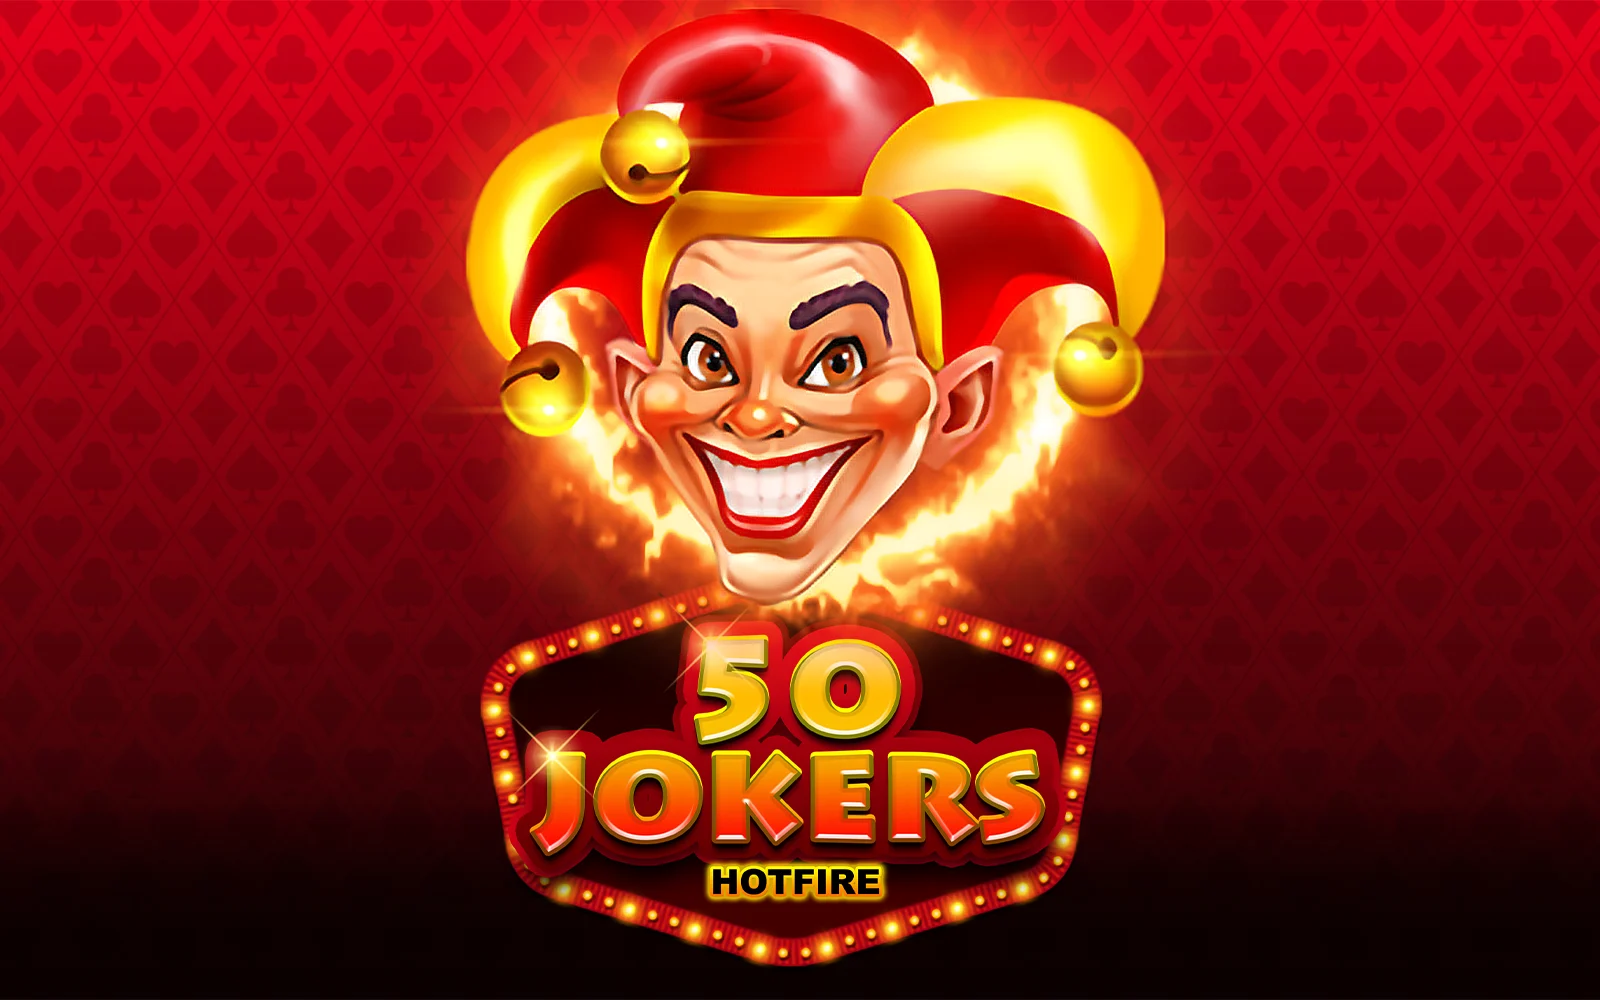 Starcasino.be online casino üzerinden 50 Jokers HOTFIRE oynayın